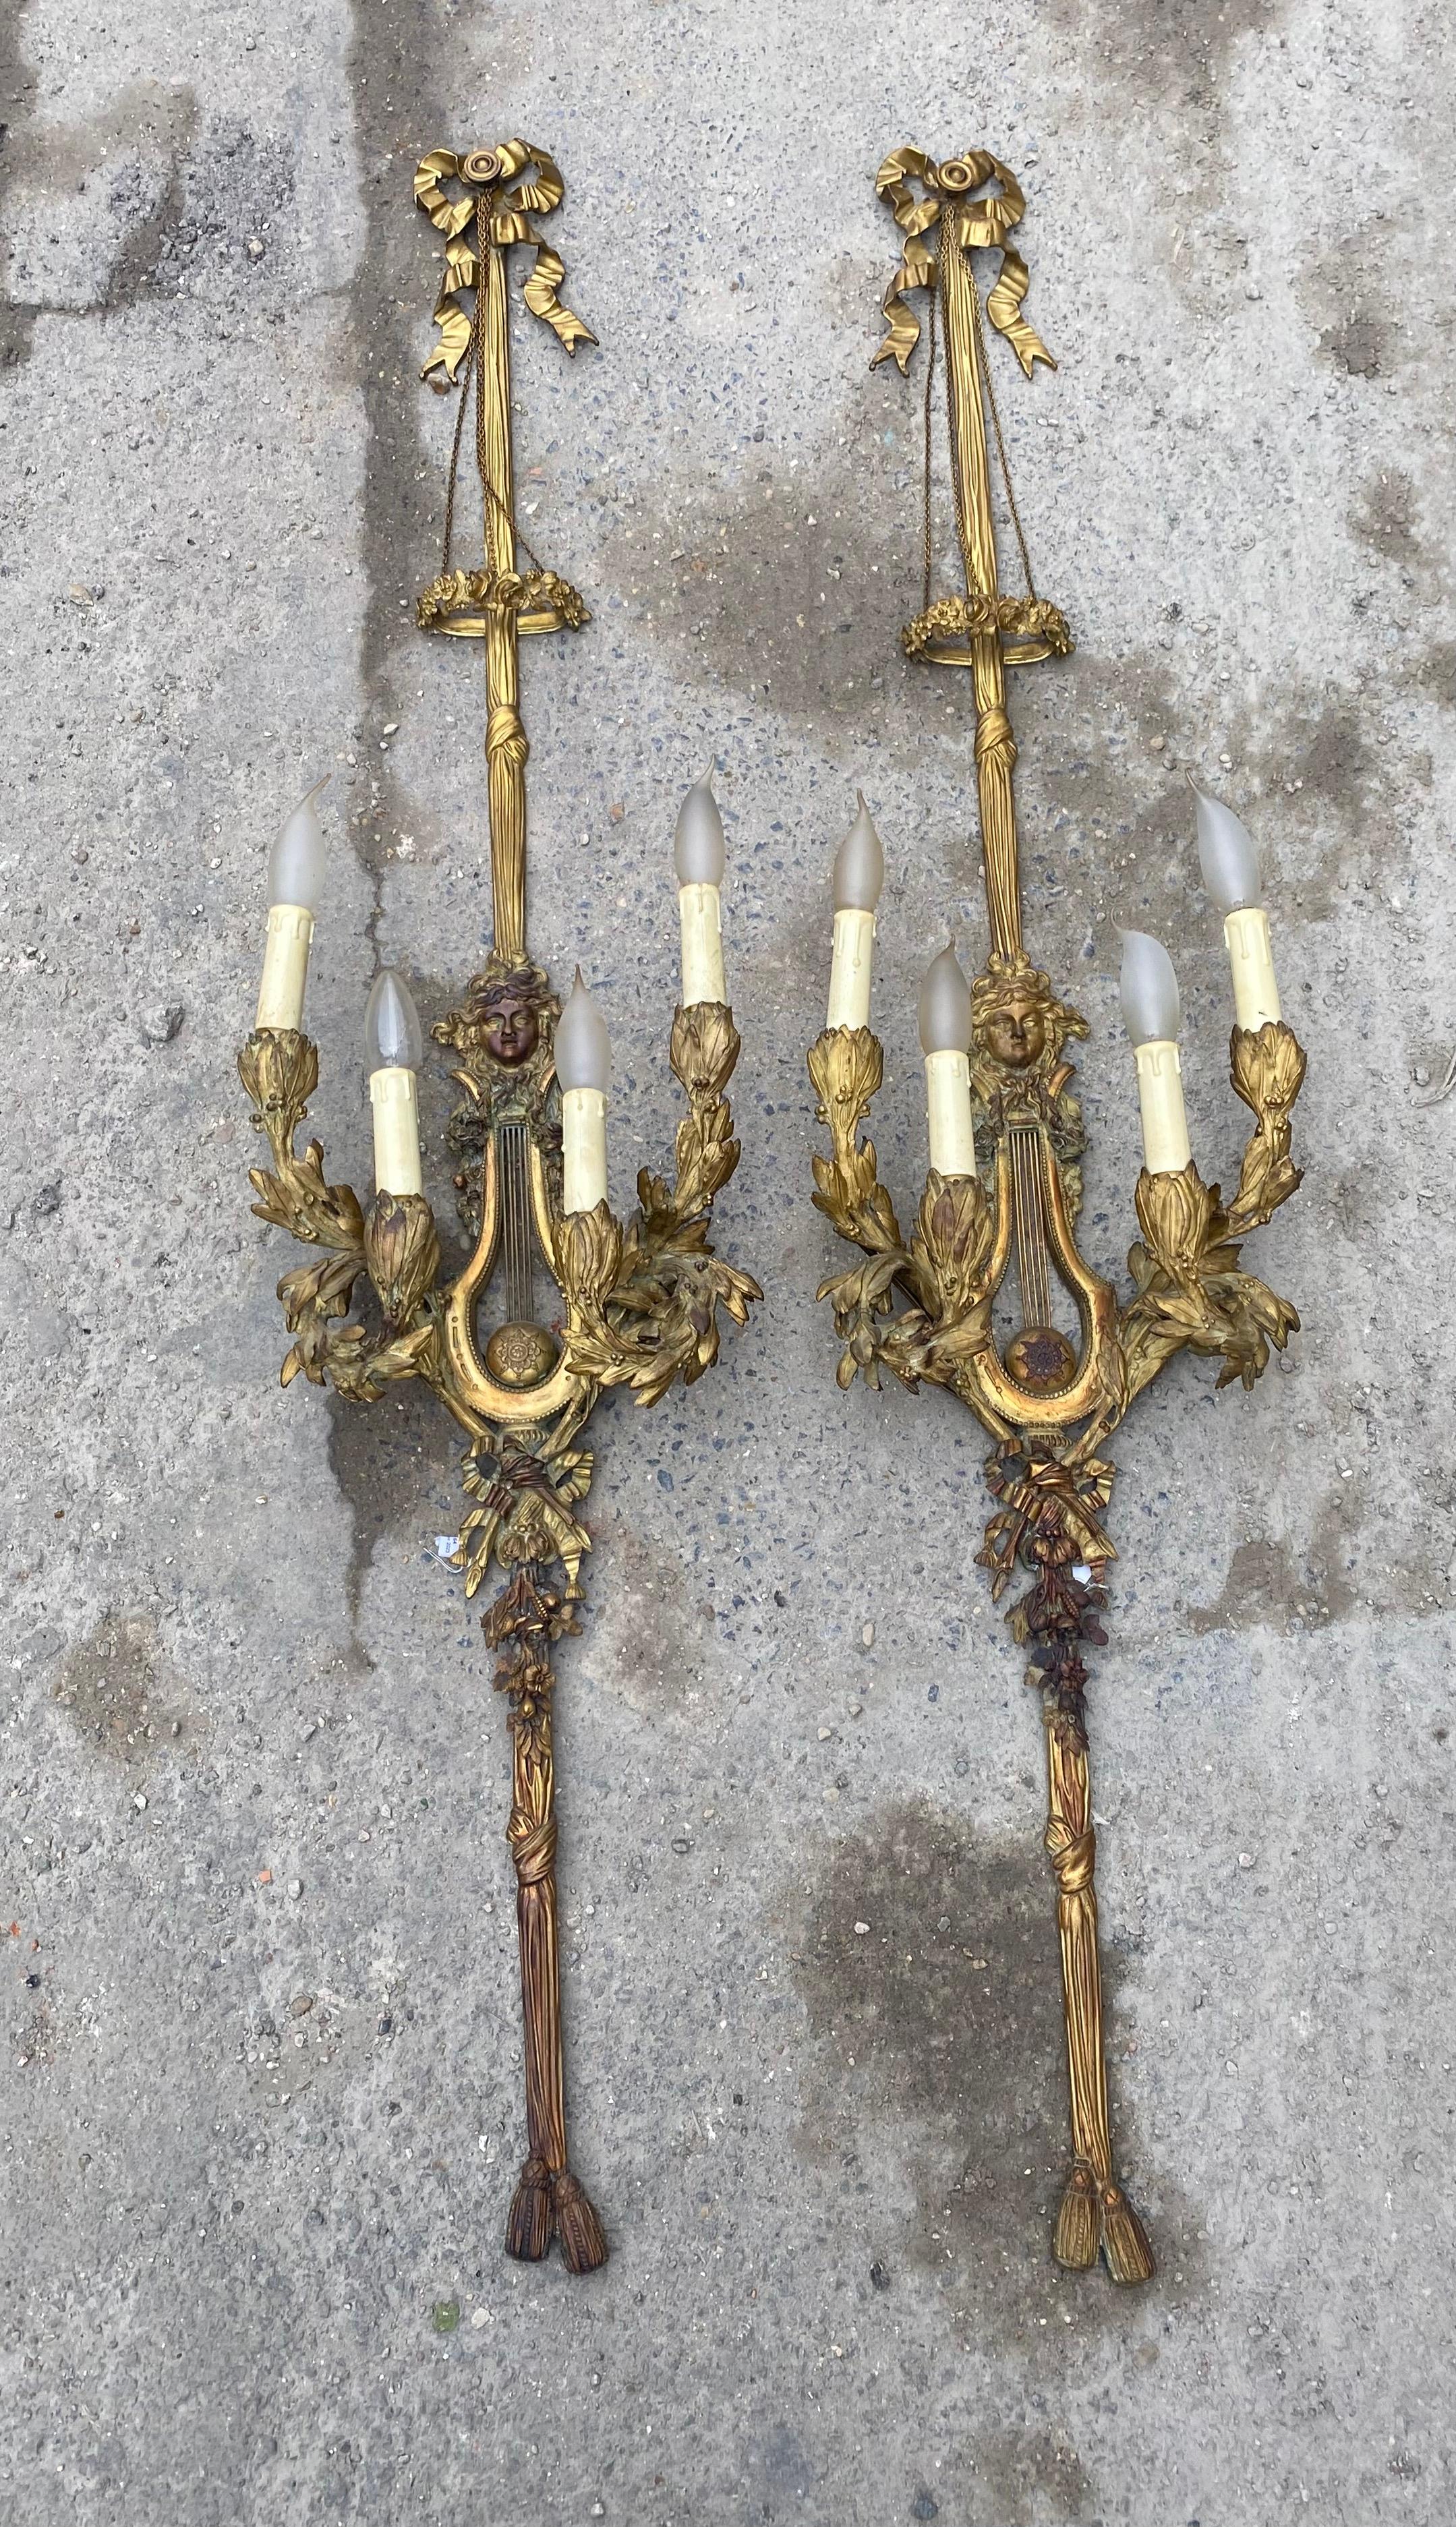 Paire d'appliques Louis 16 et 4 bras en bronze doré
conditions d'utilisation et oxydations
Ampoules à flamme E14
144 X 32 X 20,5 cm
Pierre Gouthière (1732-1813), fils d'un sellier, est devenu le plus célèbre bronzier et doreur parisien de la fin des